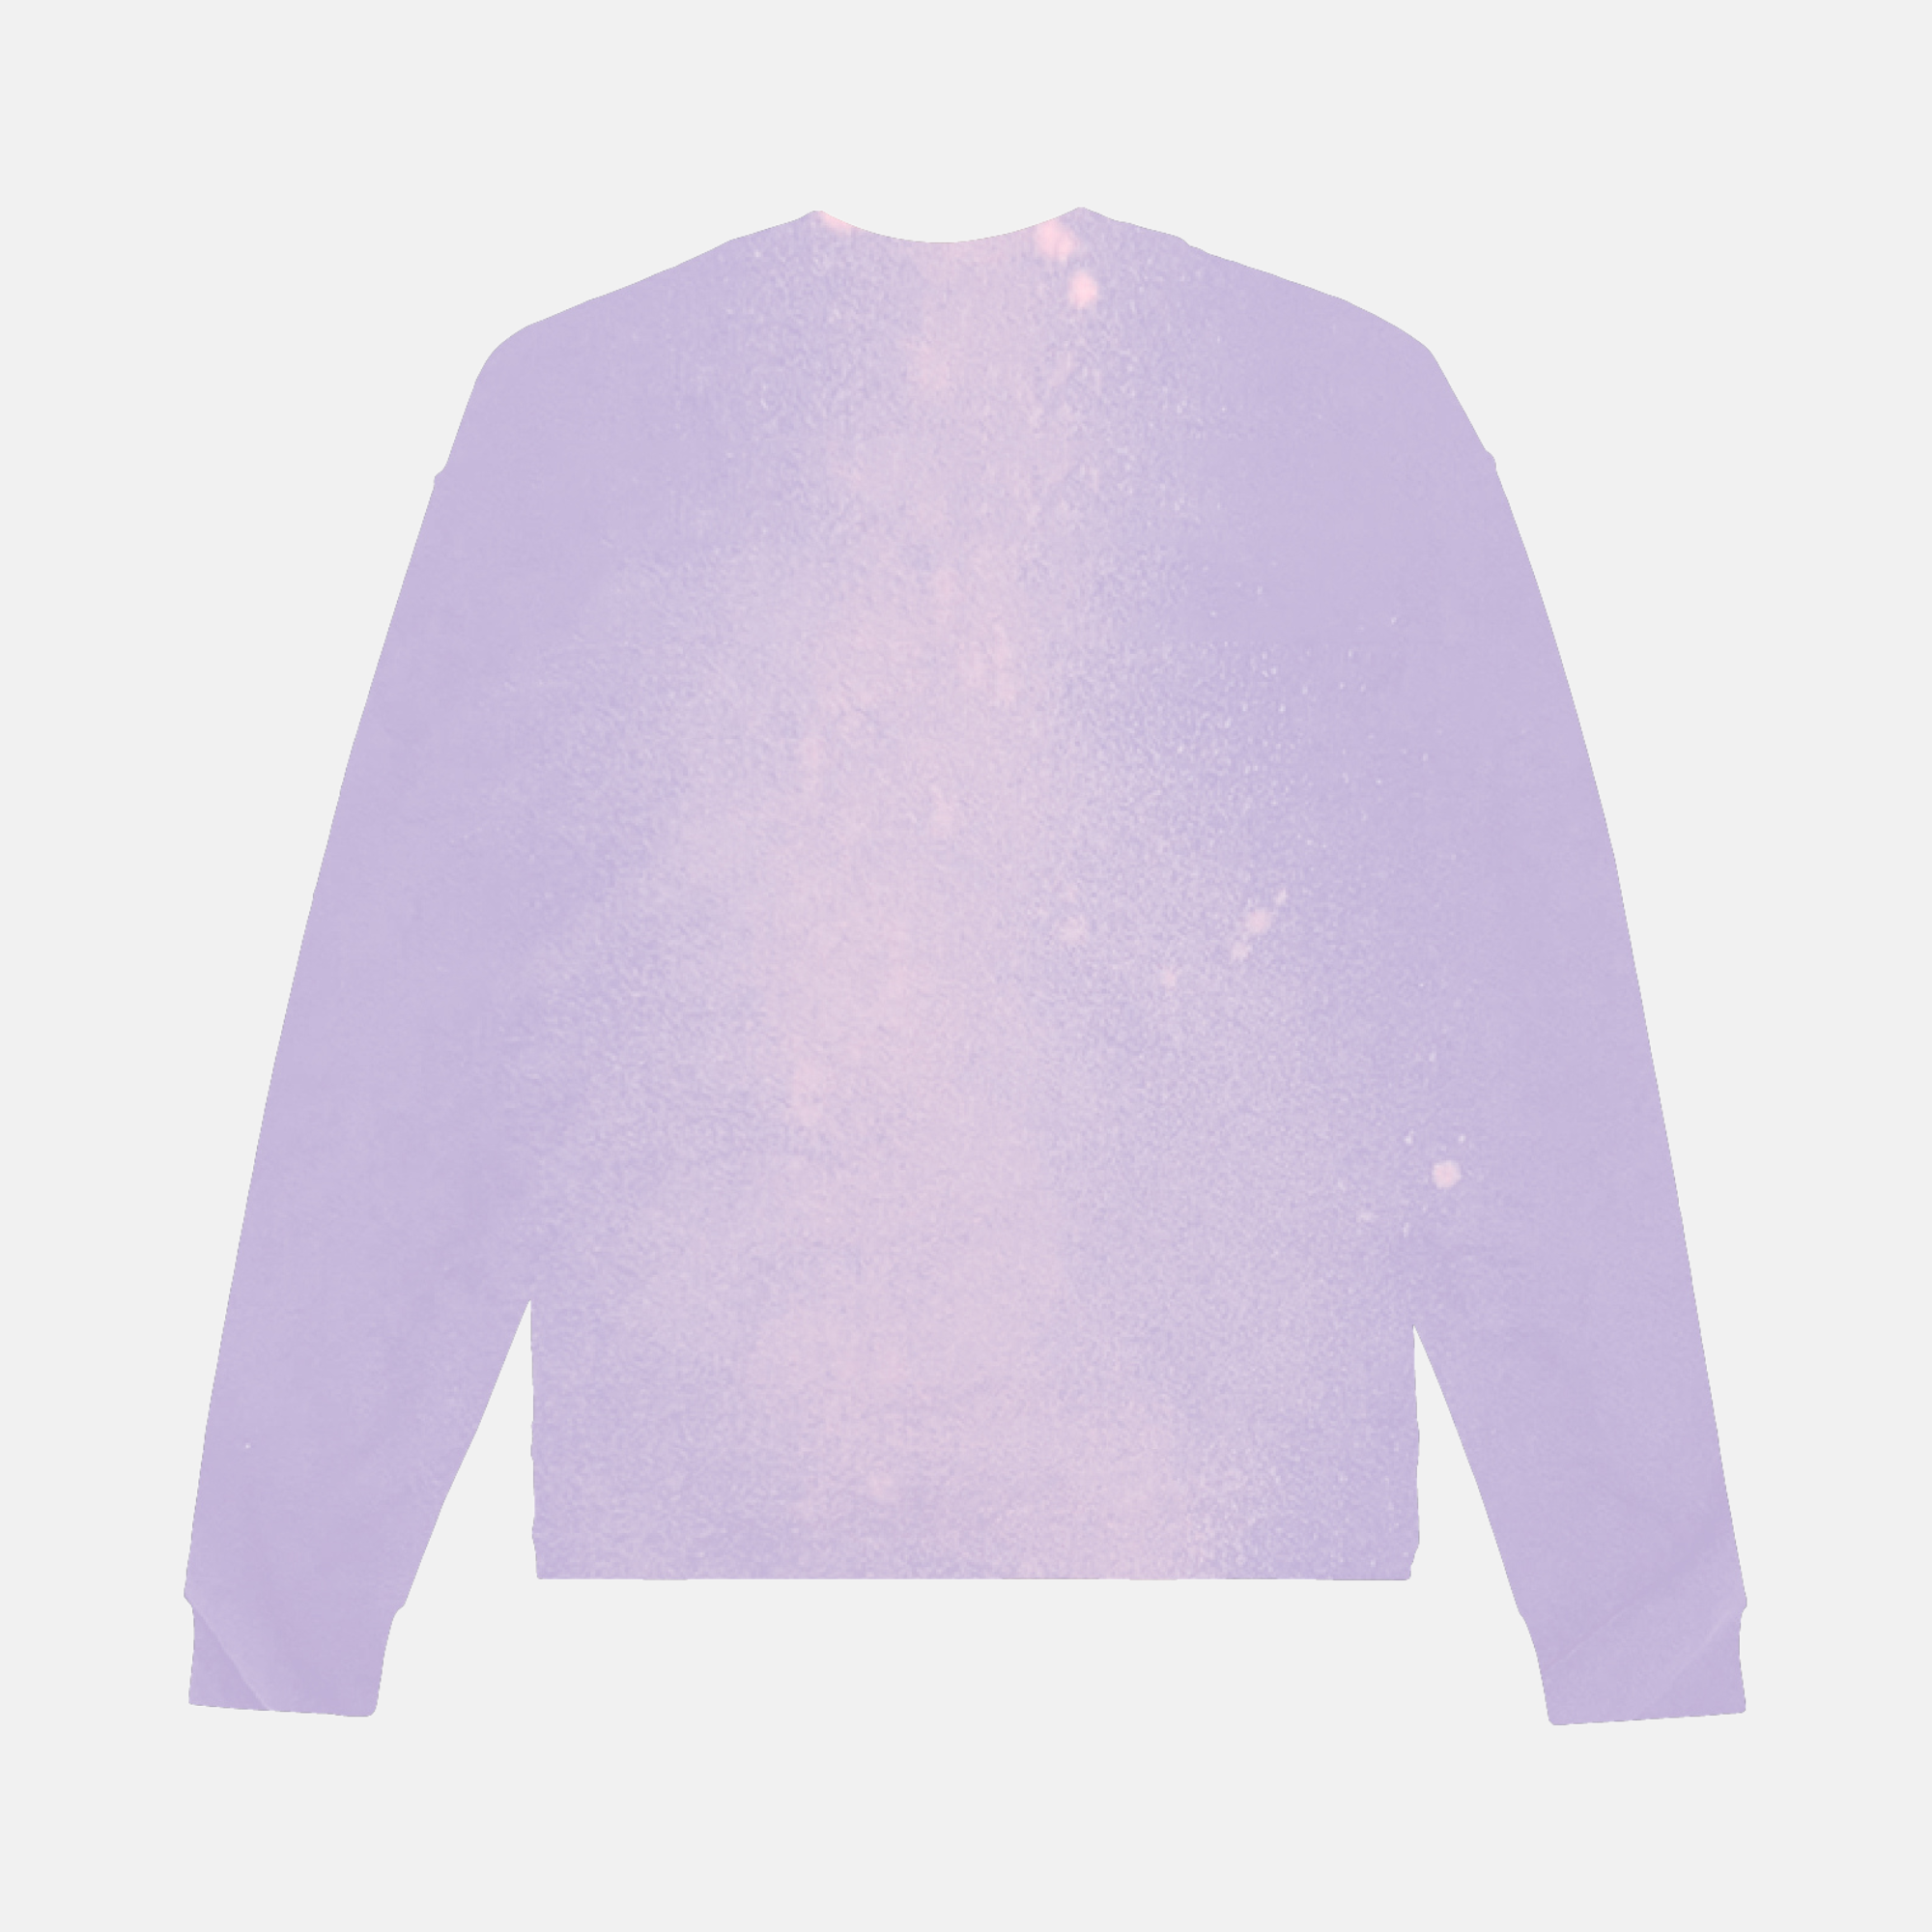 Purple Brand Textured Jersey Inside Out Tee Light Worn Denim T-Shirt –  Puffer Reds